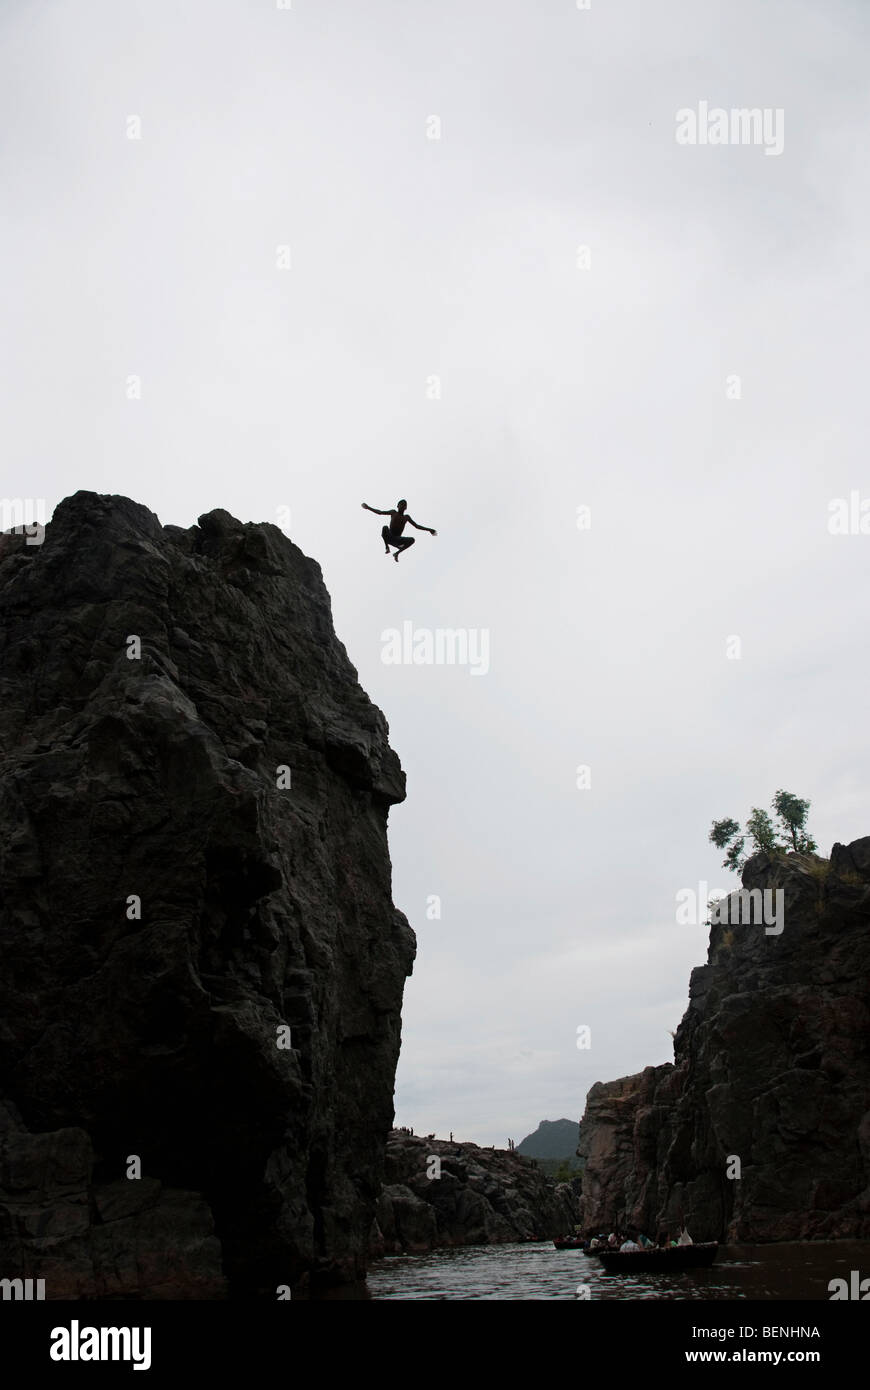 Un hombre saltando desde la cima de un acantilado Foto de stock